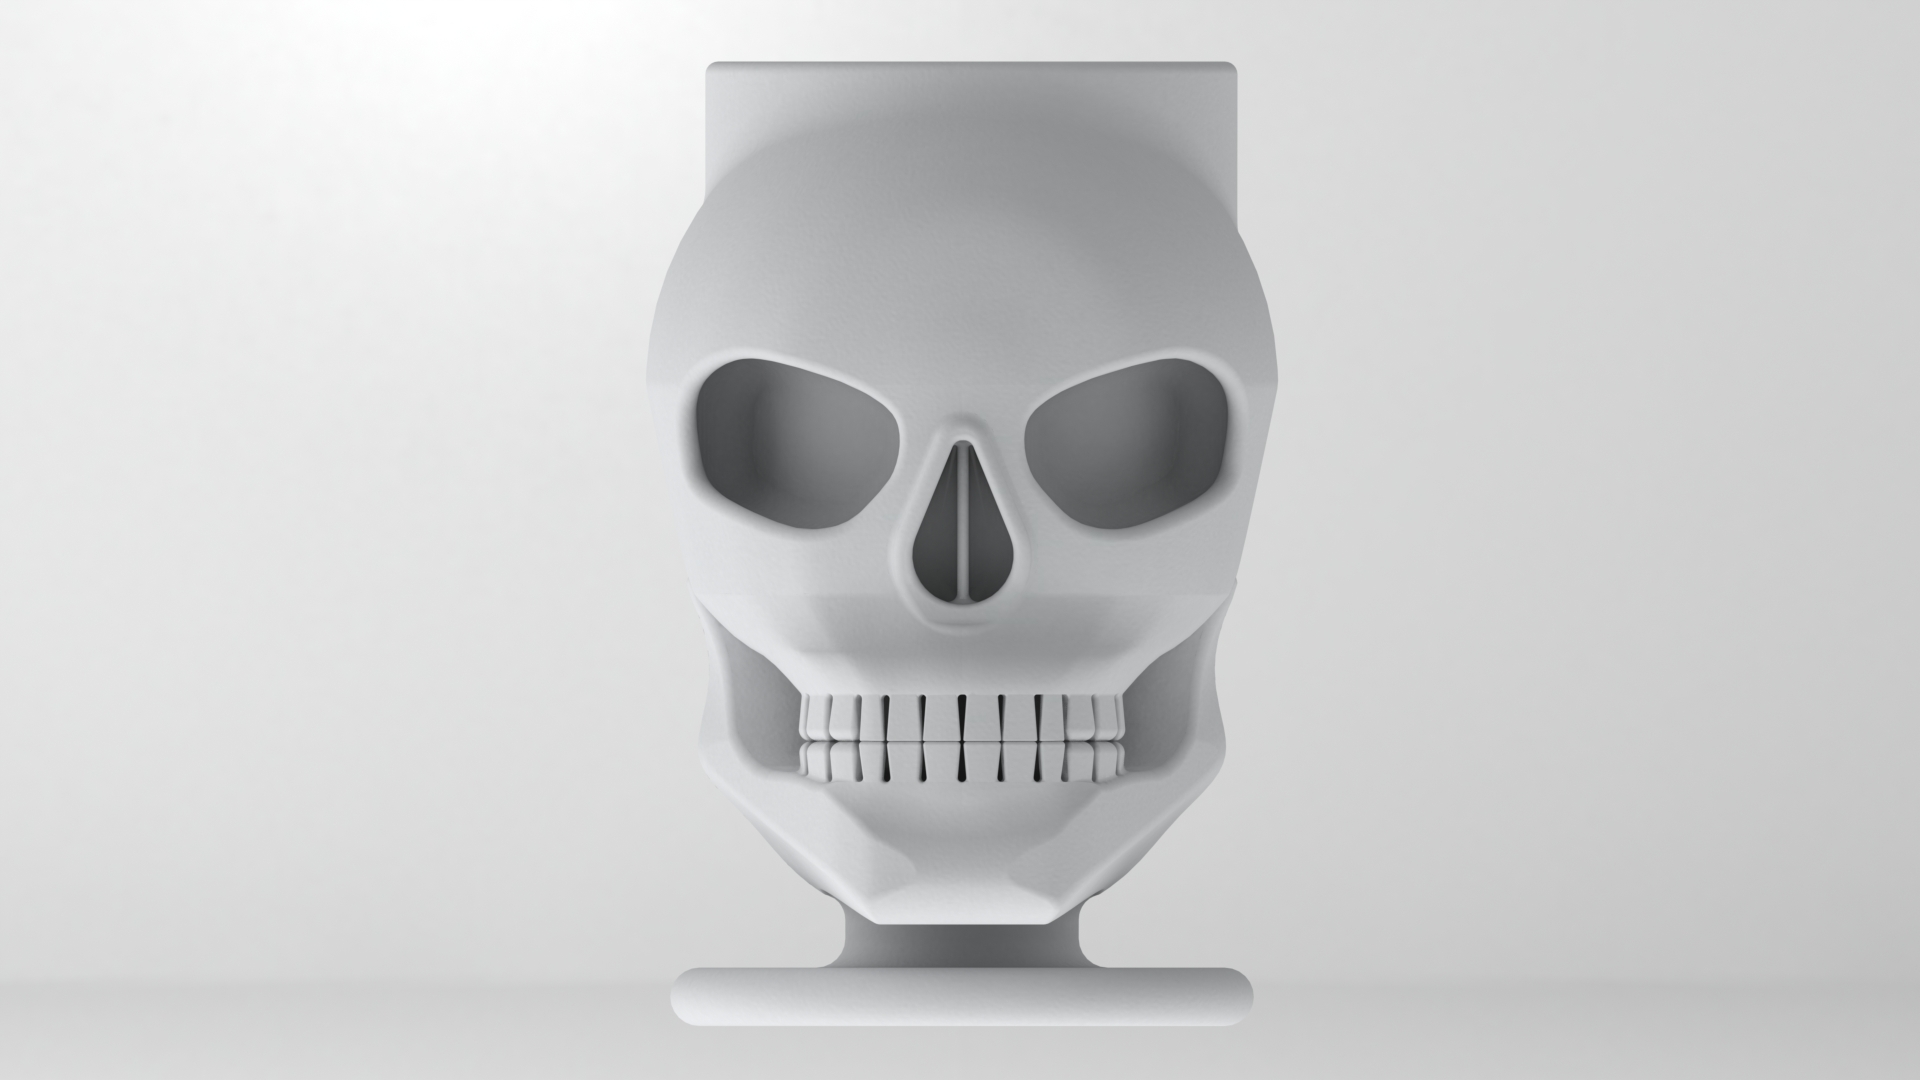 Skull Pen and Pencil Holder, Creepy Skull Desk Organizer, 3D